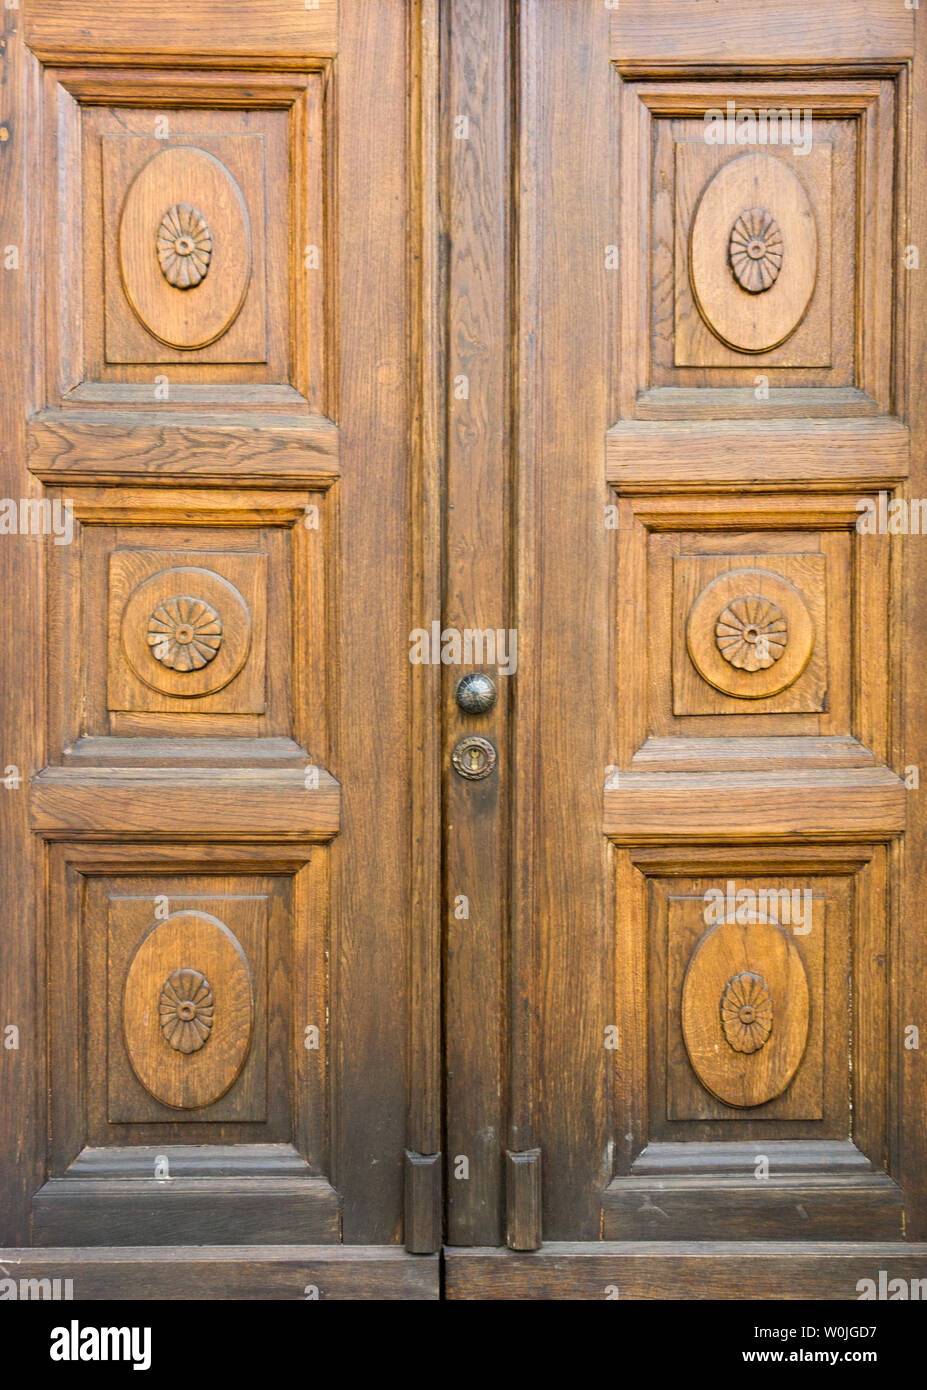 decorated wooden door Stock Photo